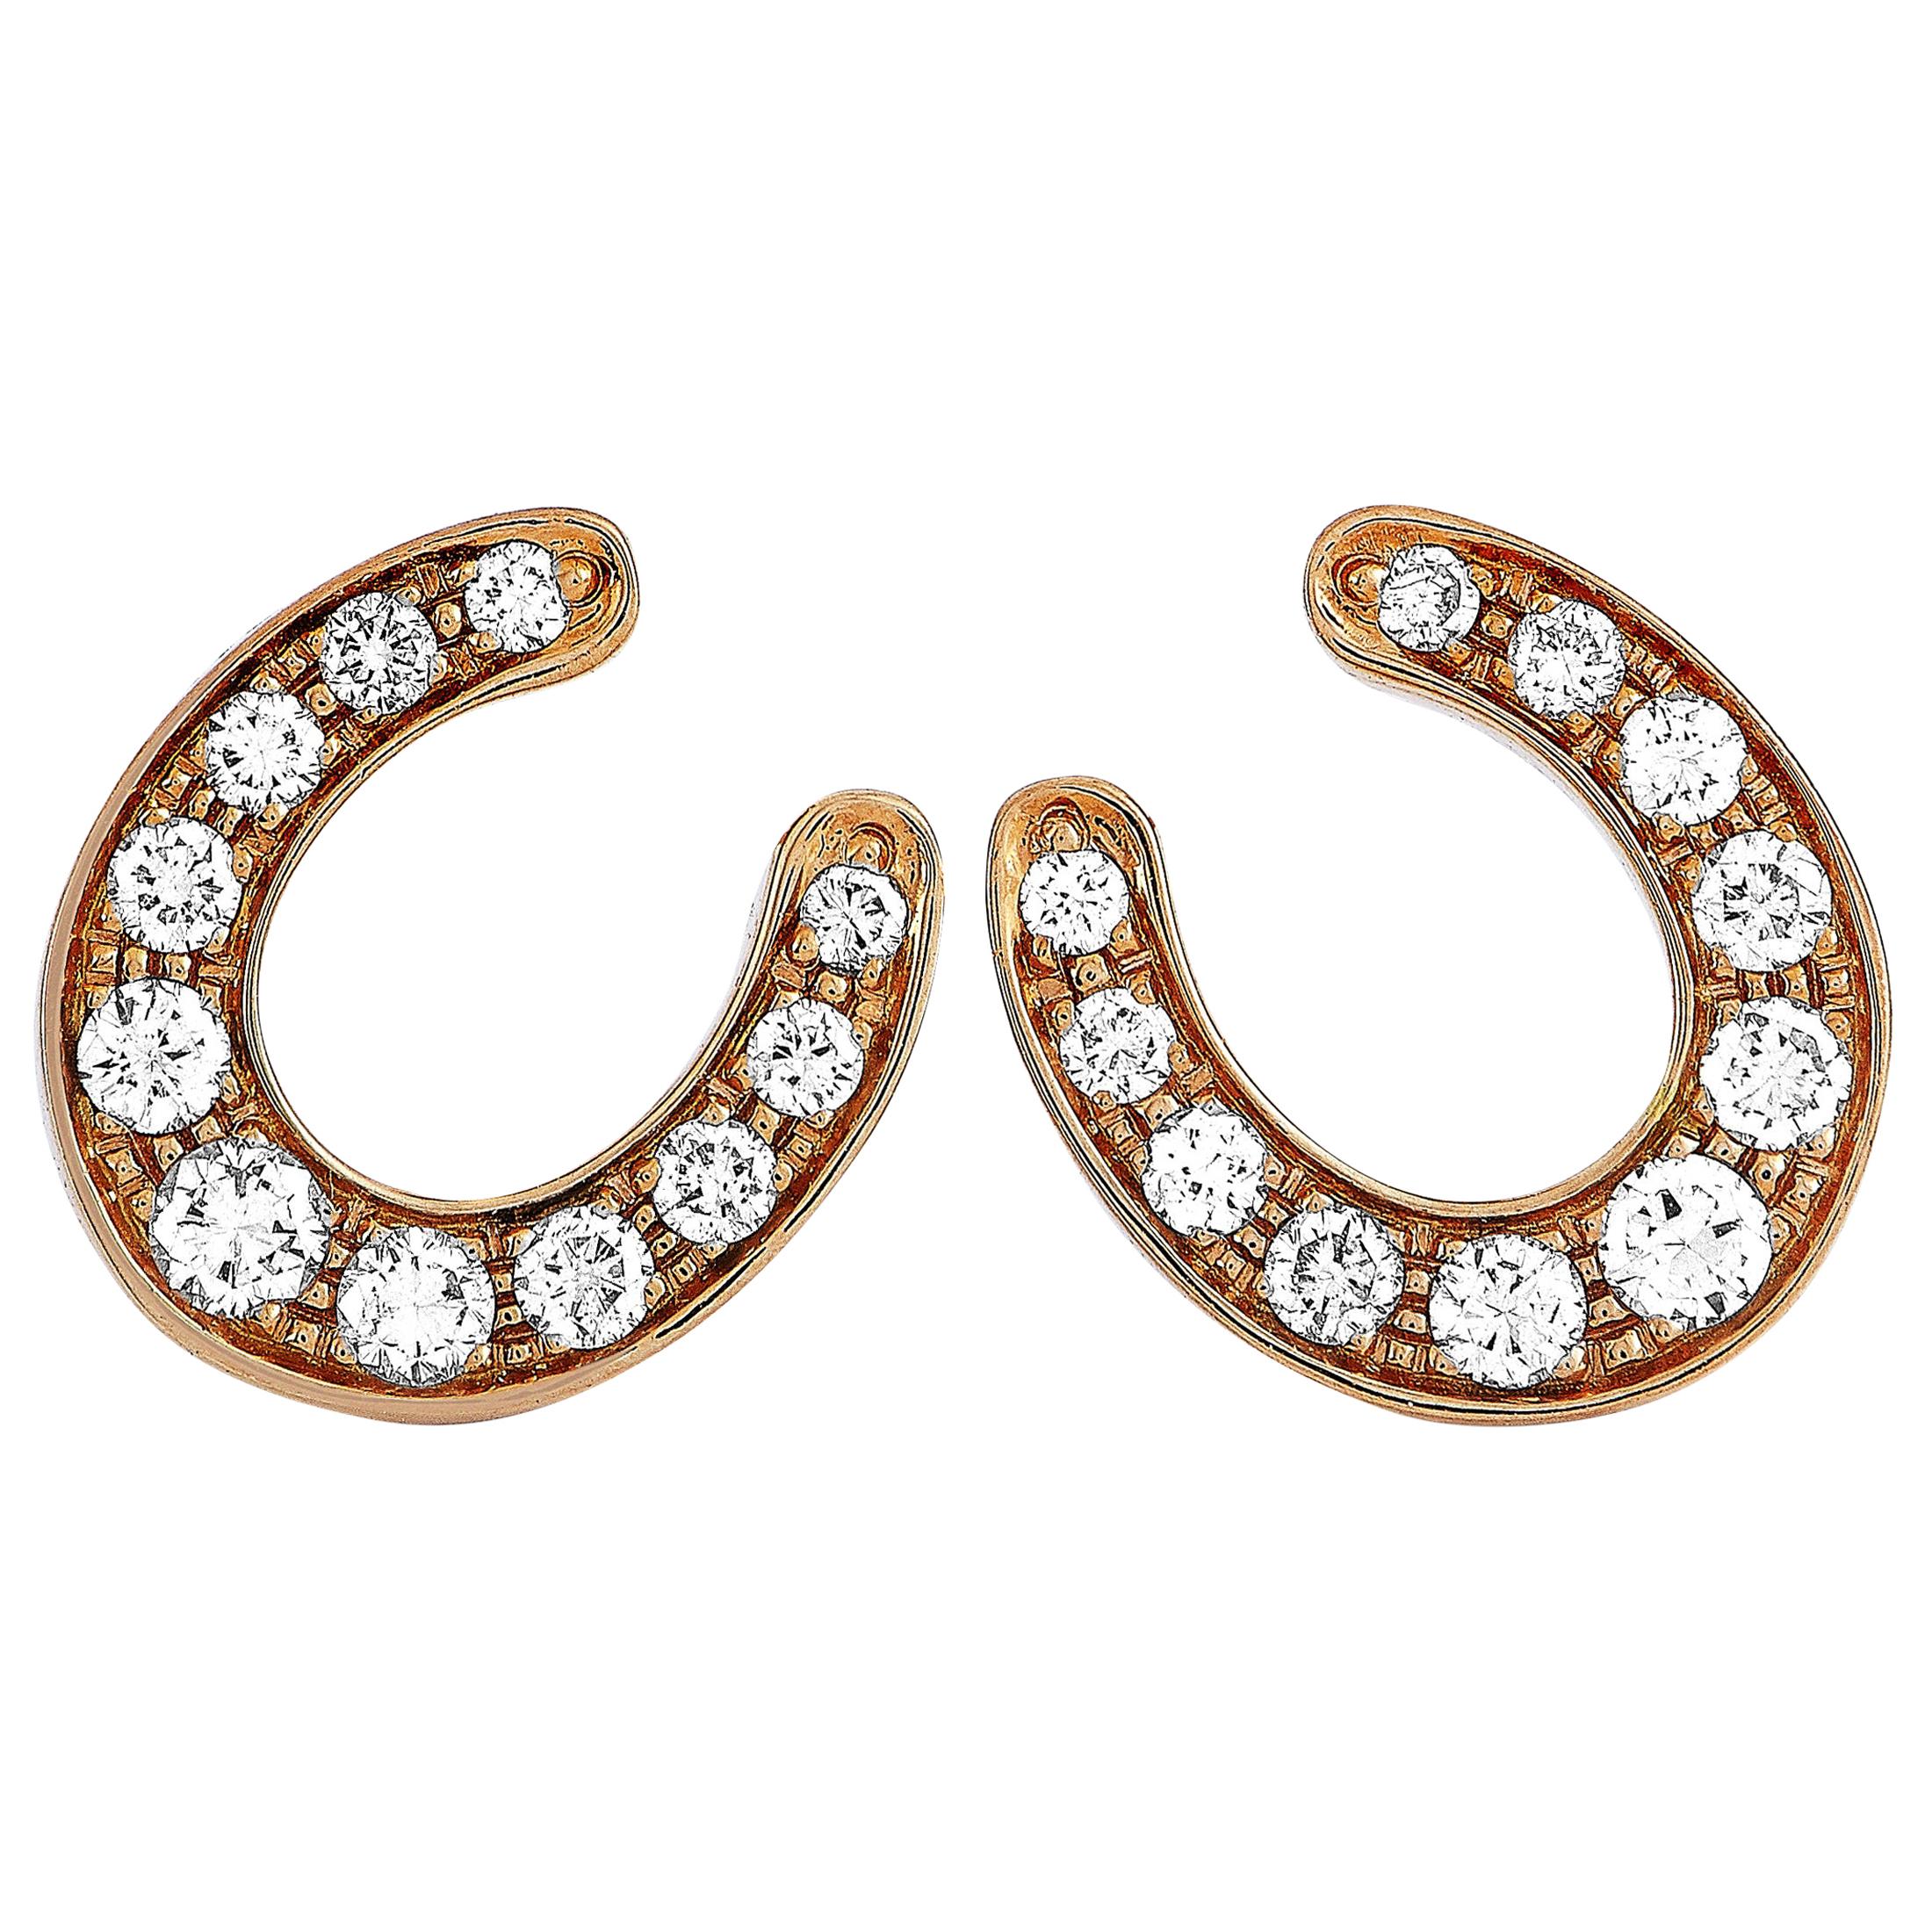 Ubaldi 18 Karat Rose Gold 0.60 Carat Diamond Horseshoe Earrings